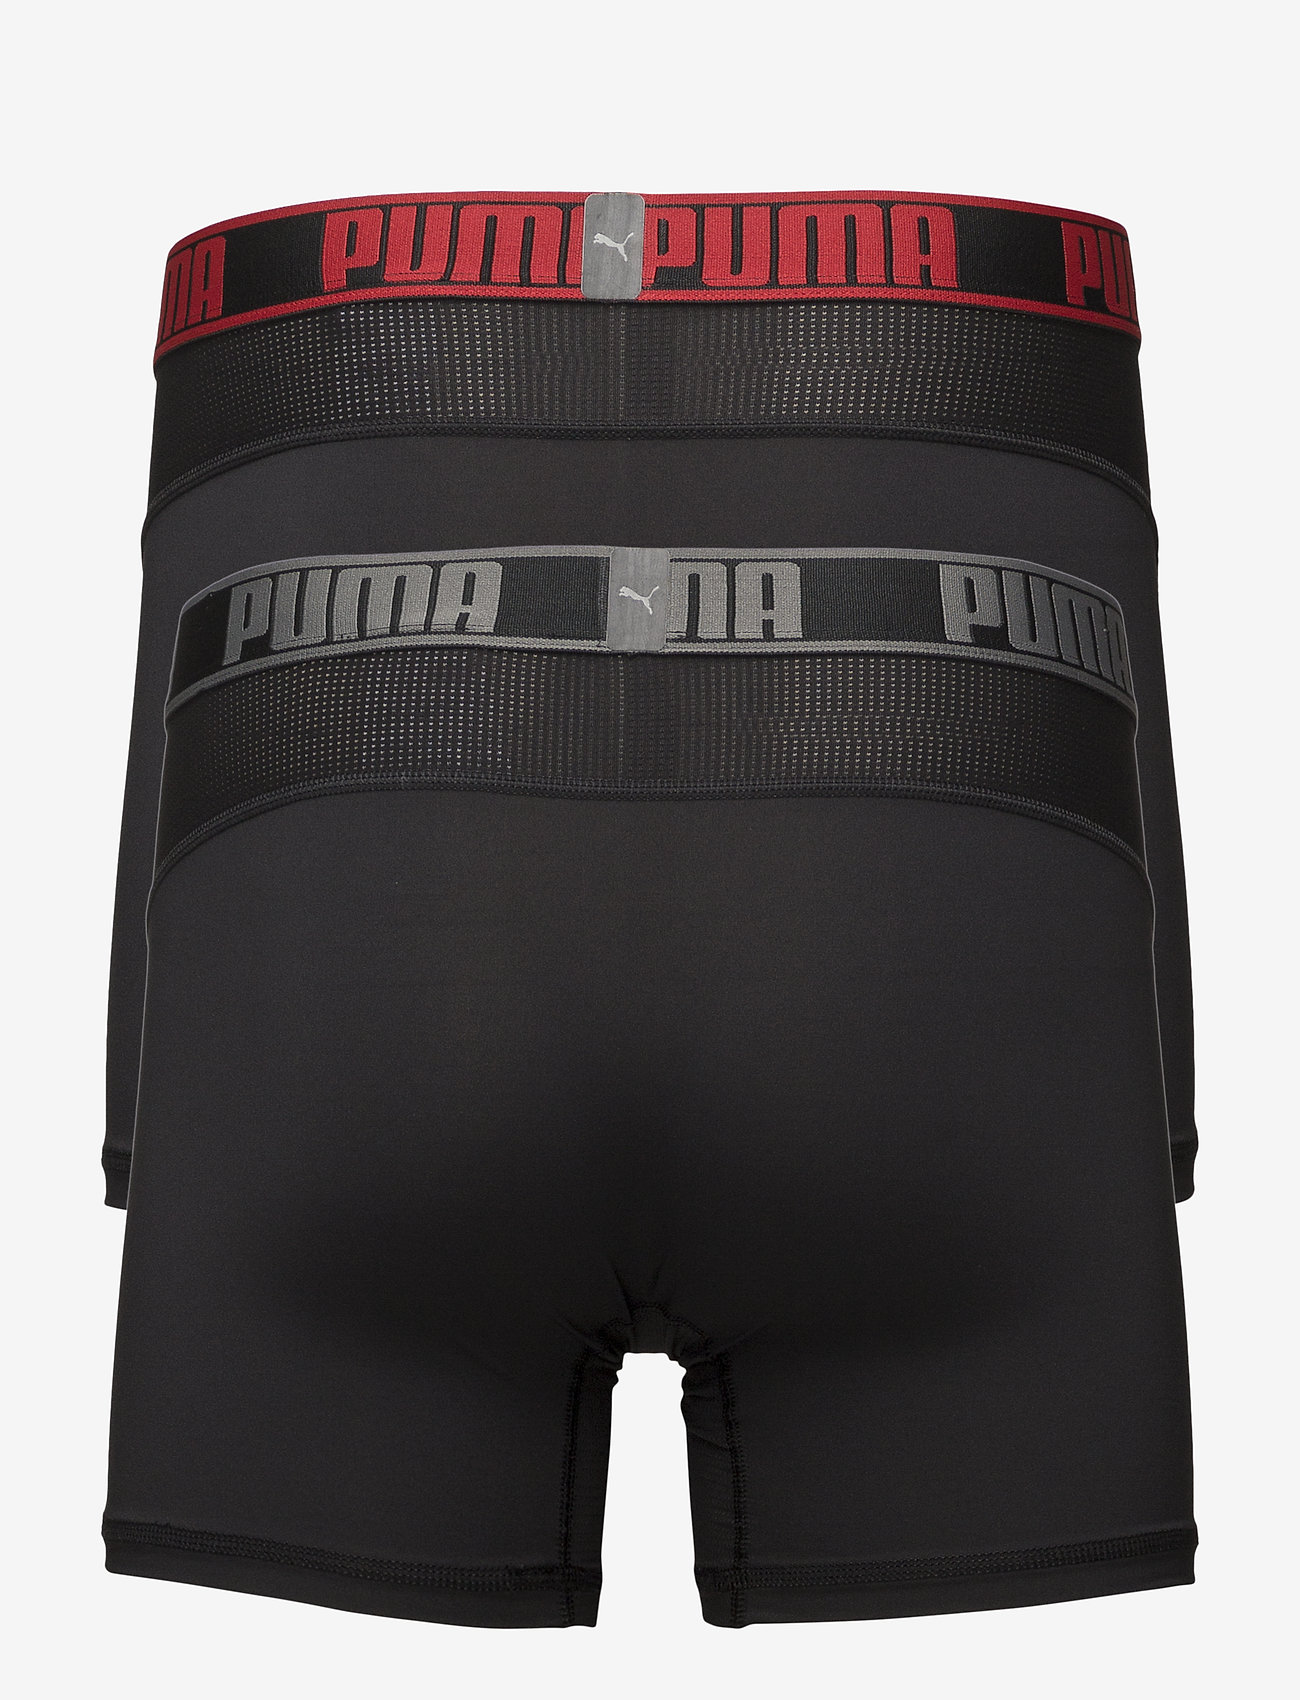 puma underwear